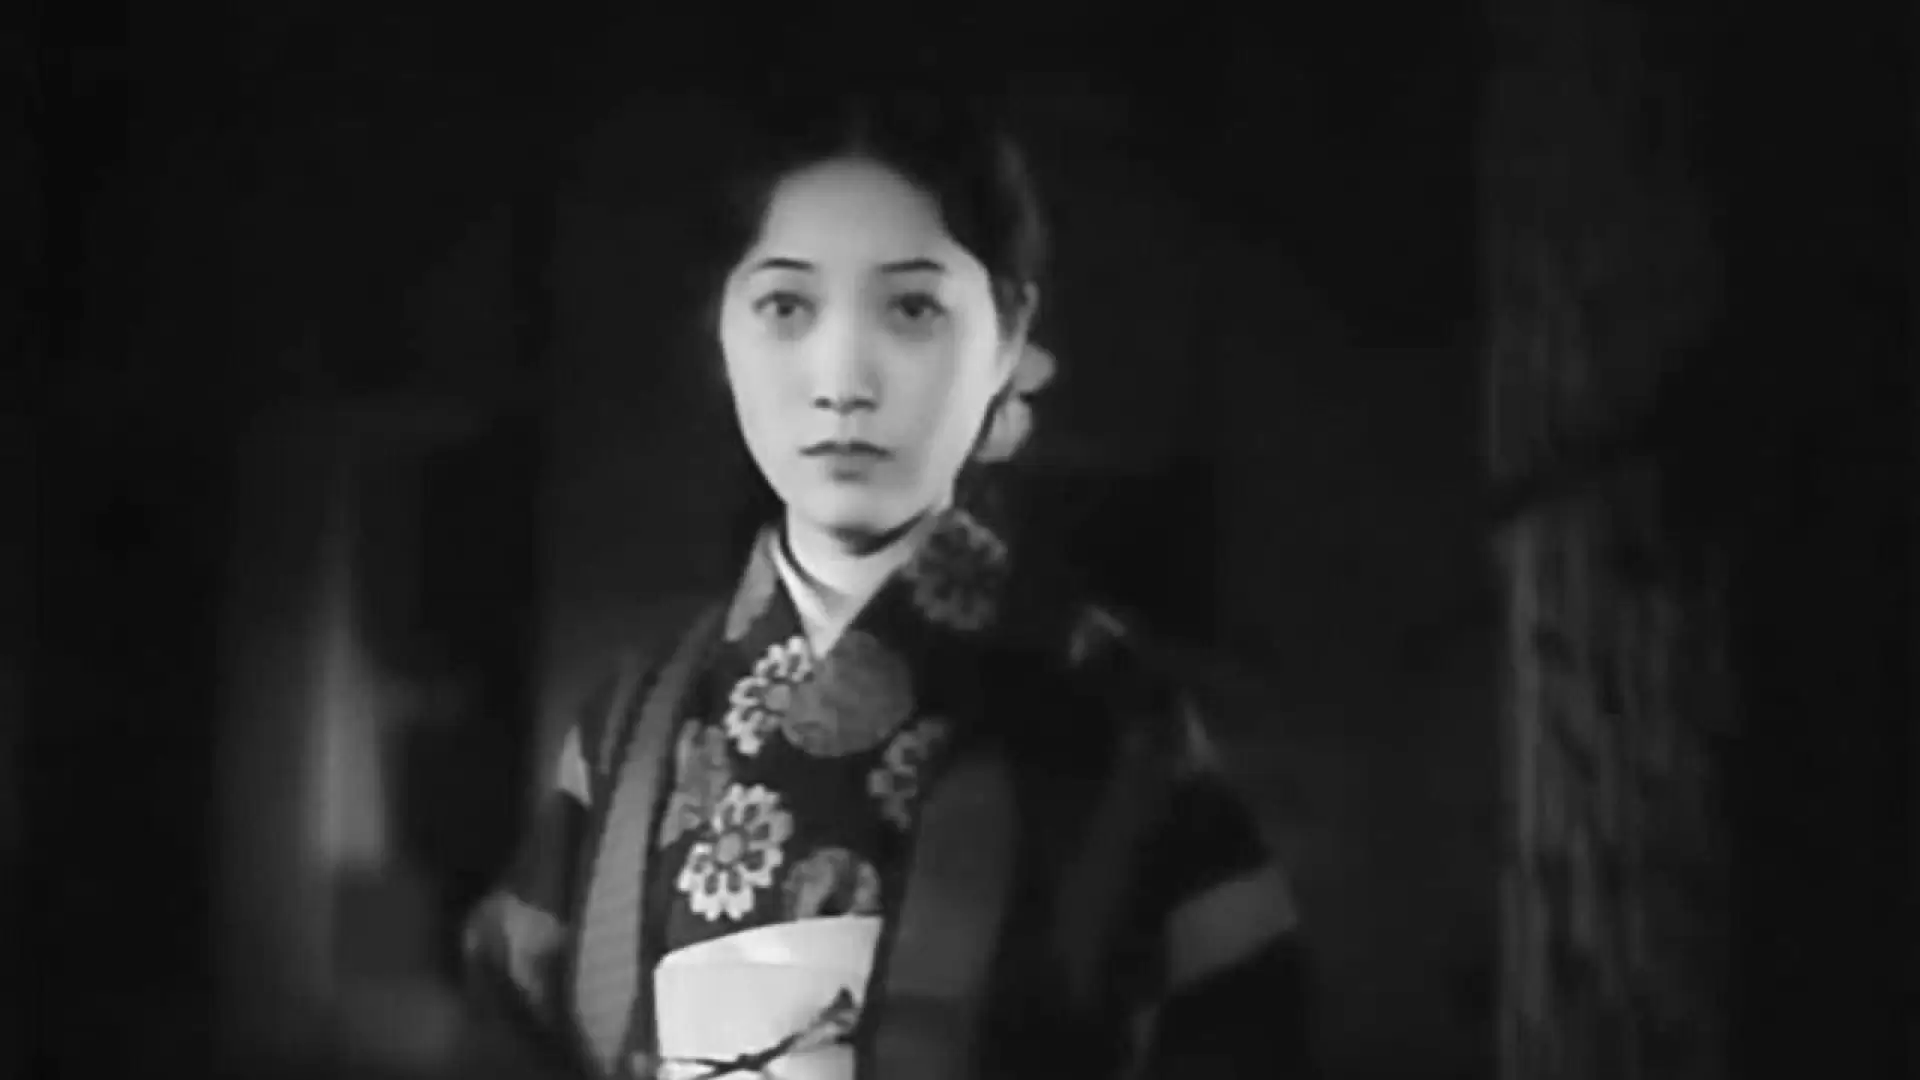 دانلود فیلم Dragnet Girl 1933 با زیرنویس فارسی